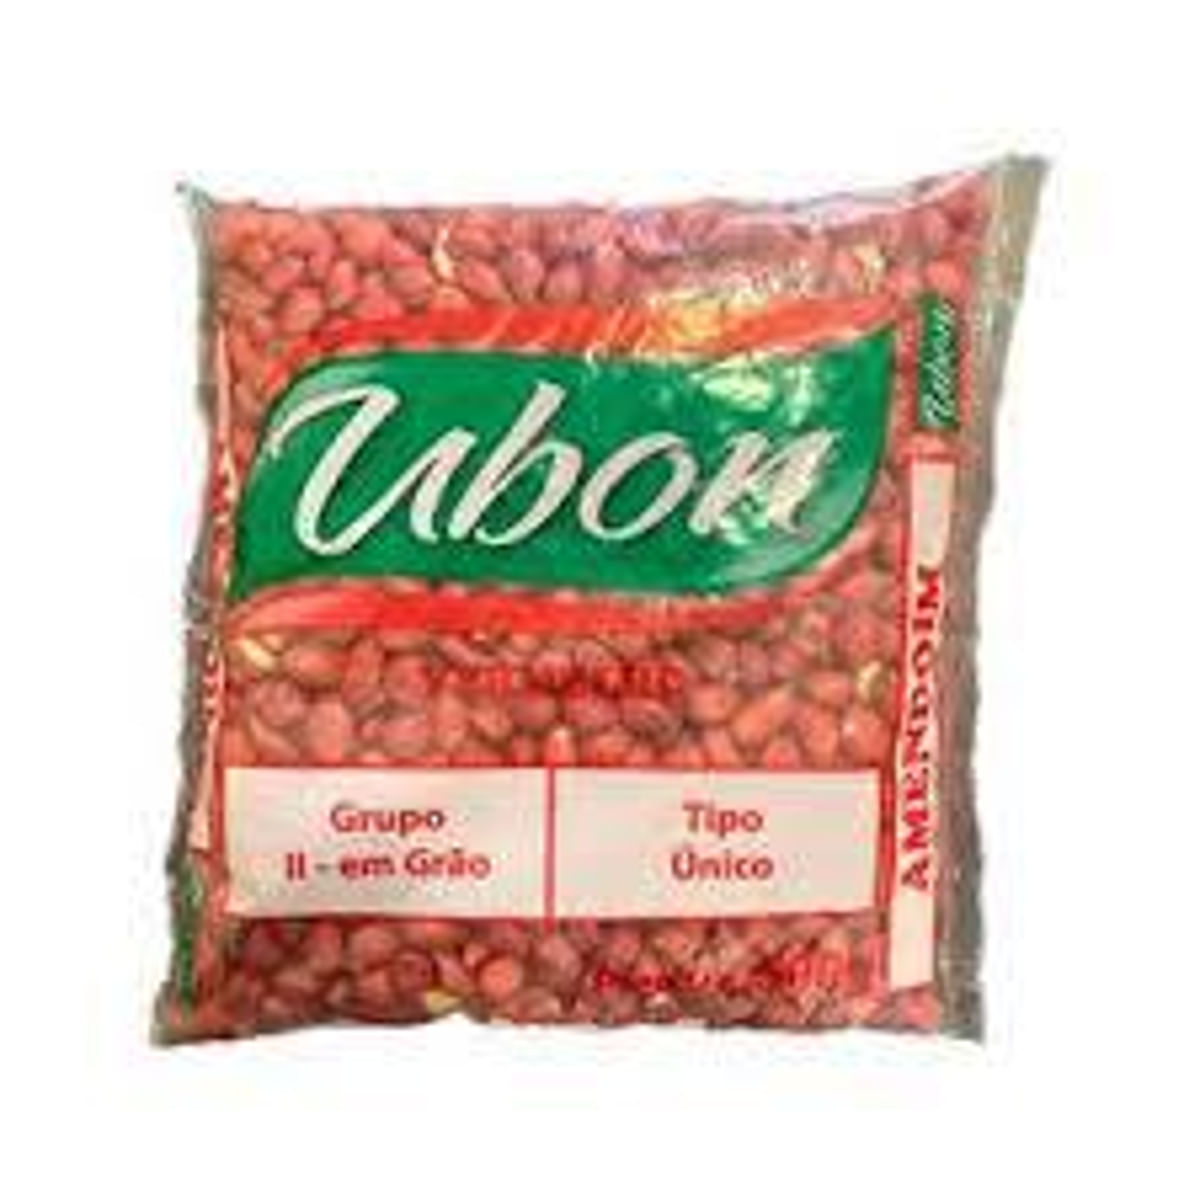 amendoim-cru-ubon-500-g-1.jpg